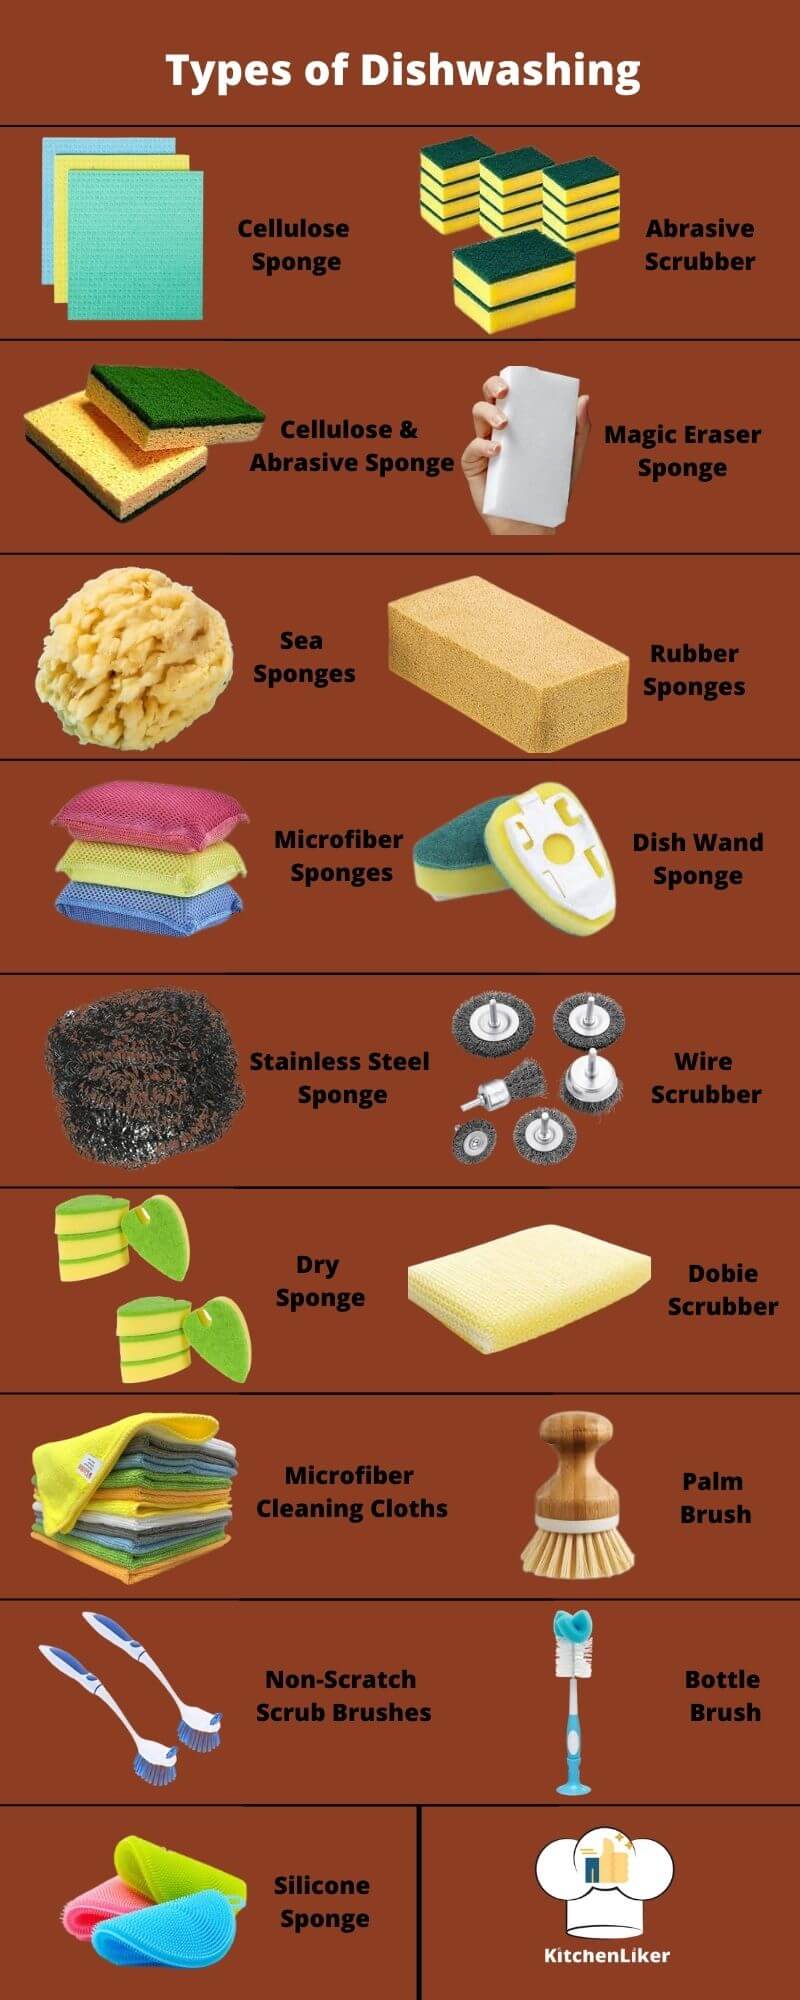 types of dishwashing sponges and brushes 